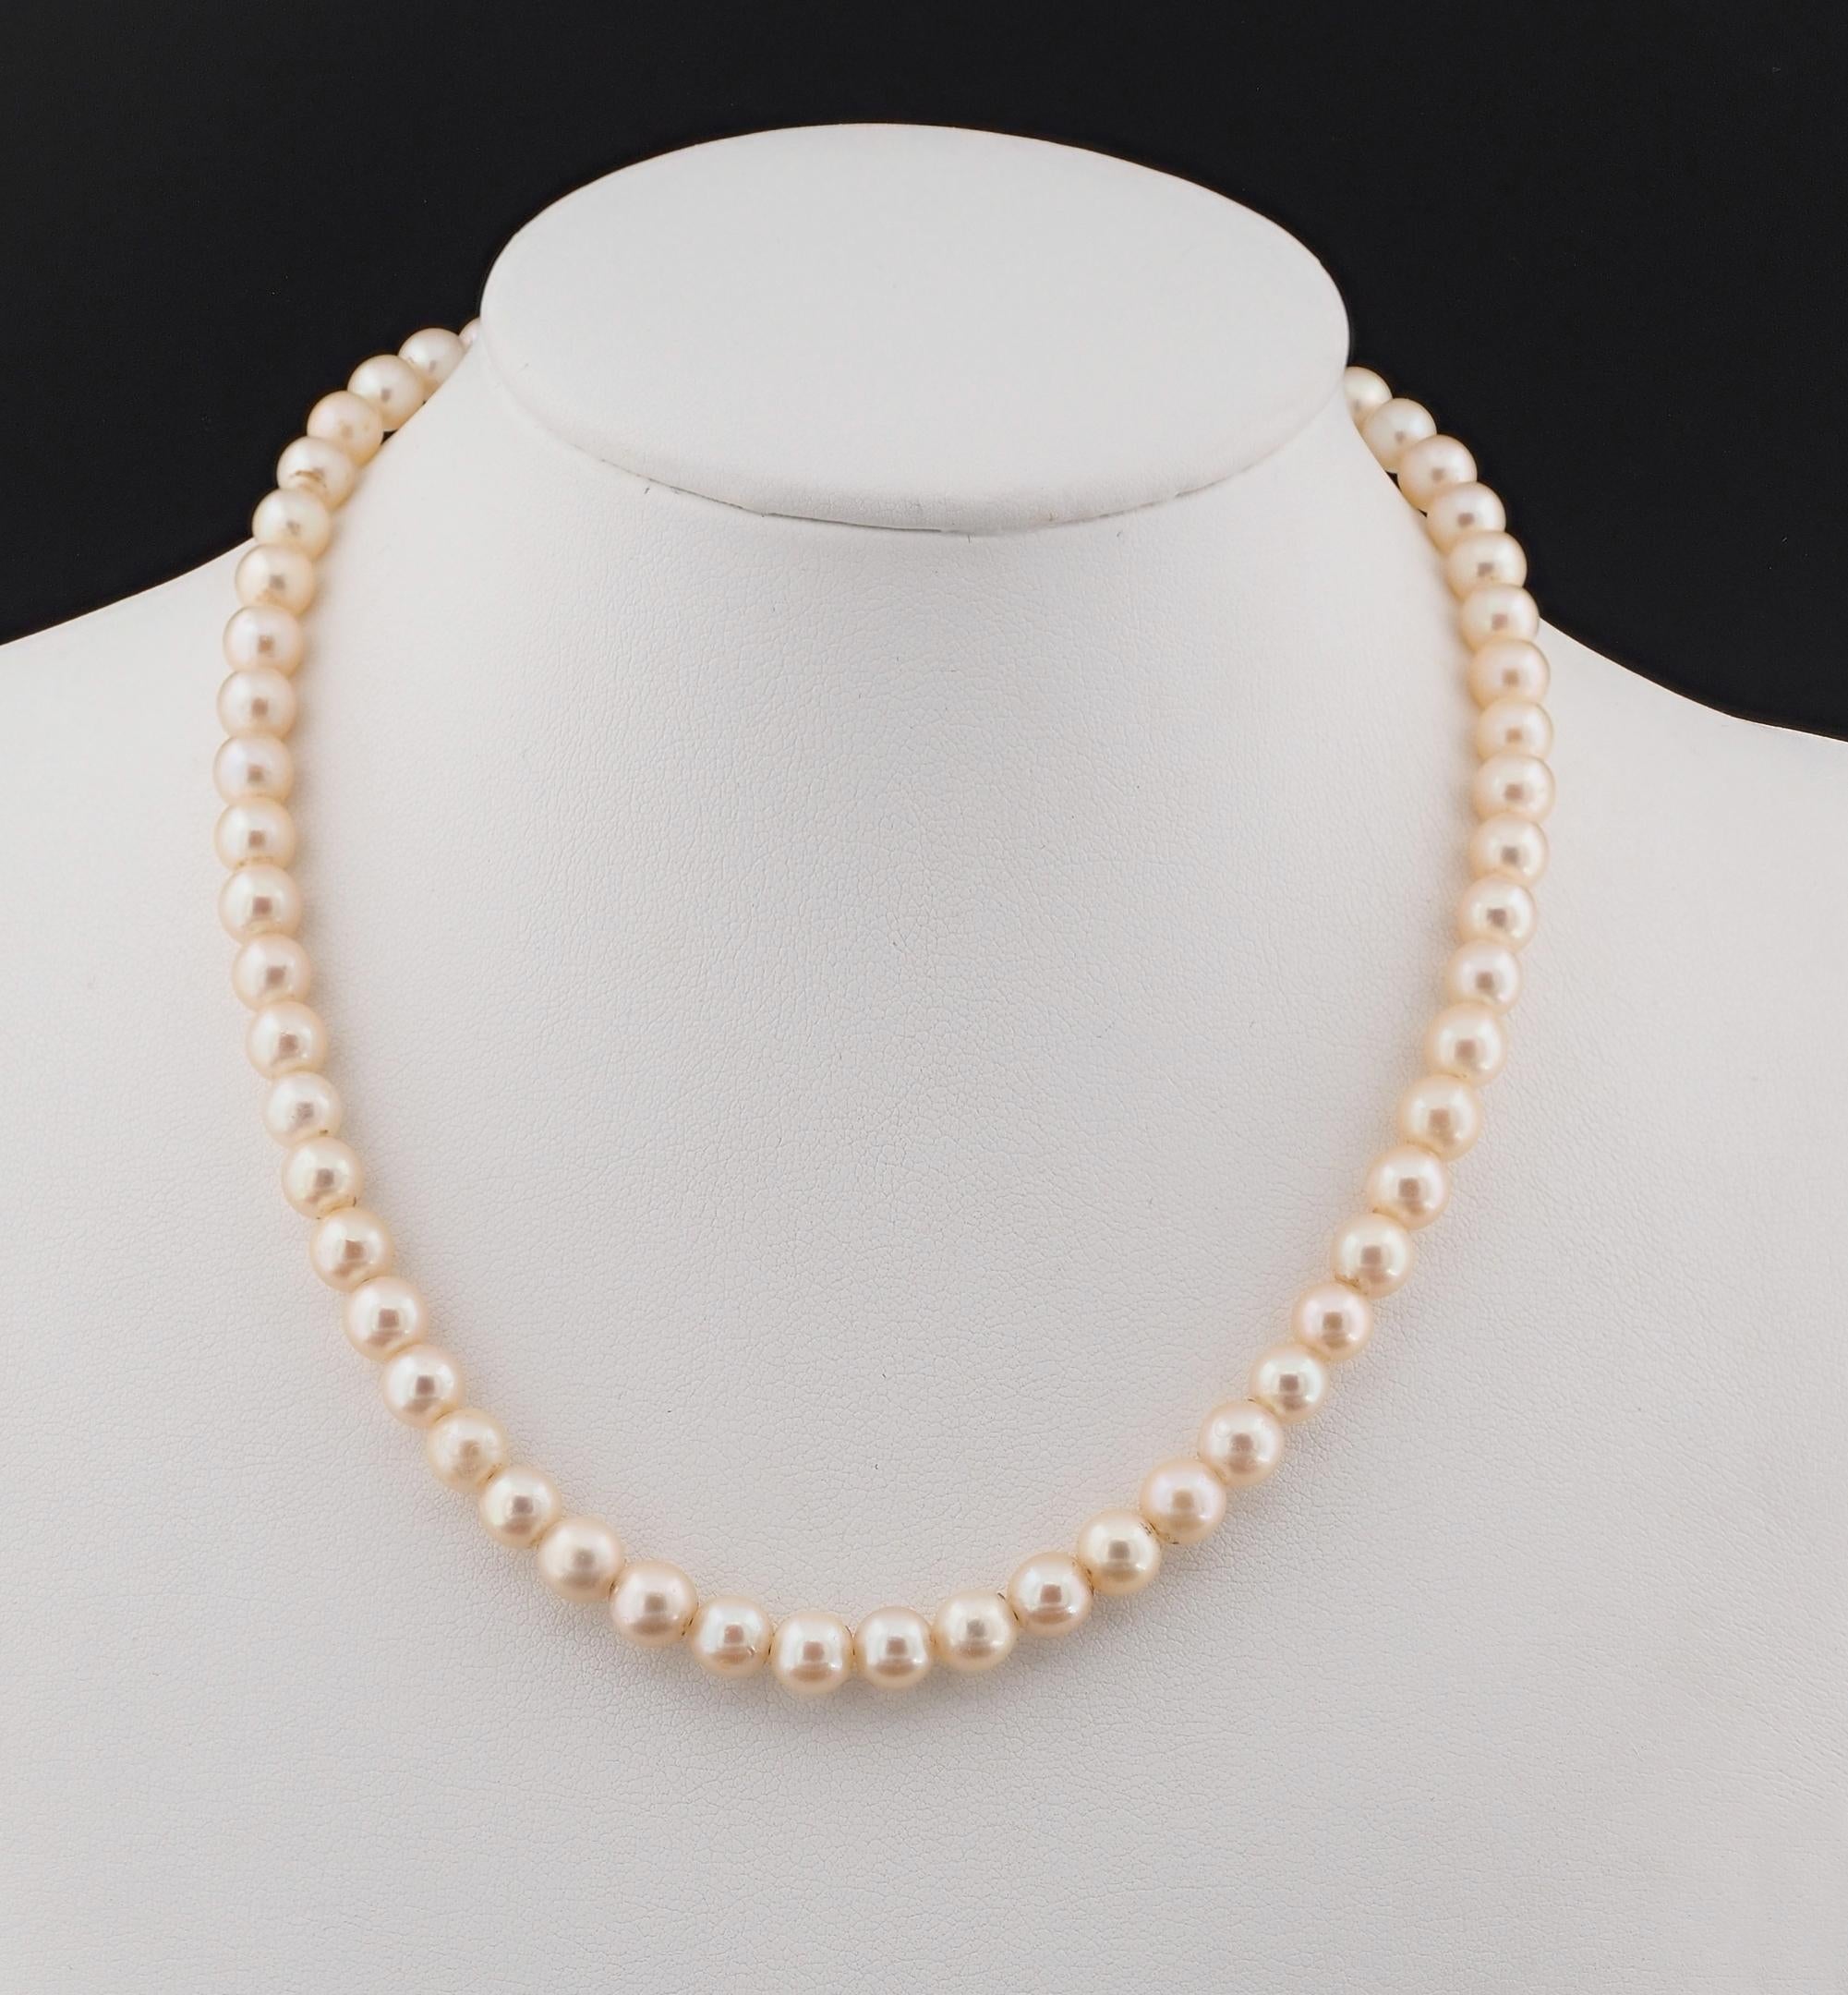 Ein Hauch von Eleganz
Dieser herrliche antike Perlenstrang aus der Zeit des Art déco ist von unendlicher Schönheit.
Als Inbegriff der Eleganz sind diese antiken Halsketten einfach so begehrenswert und schwer zu finden
1920 ca.; bestehend aus einem